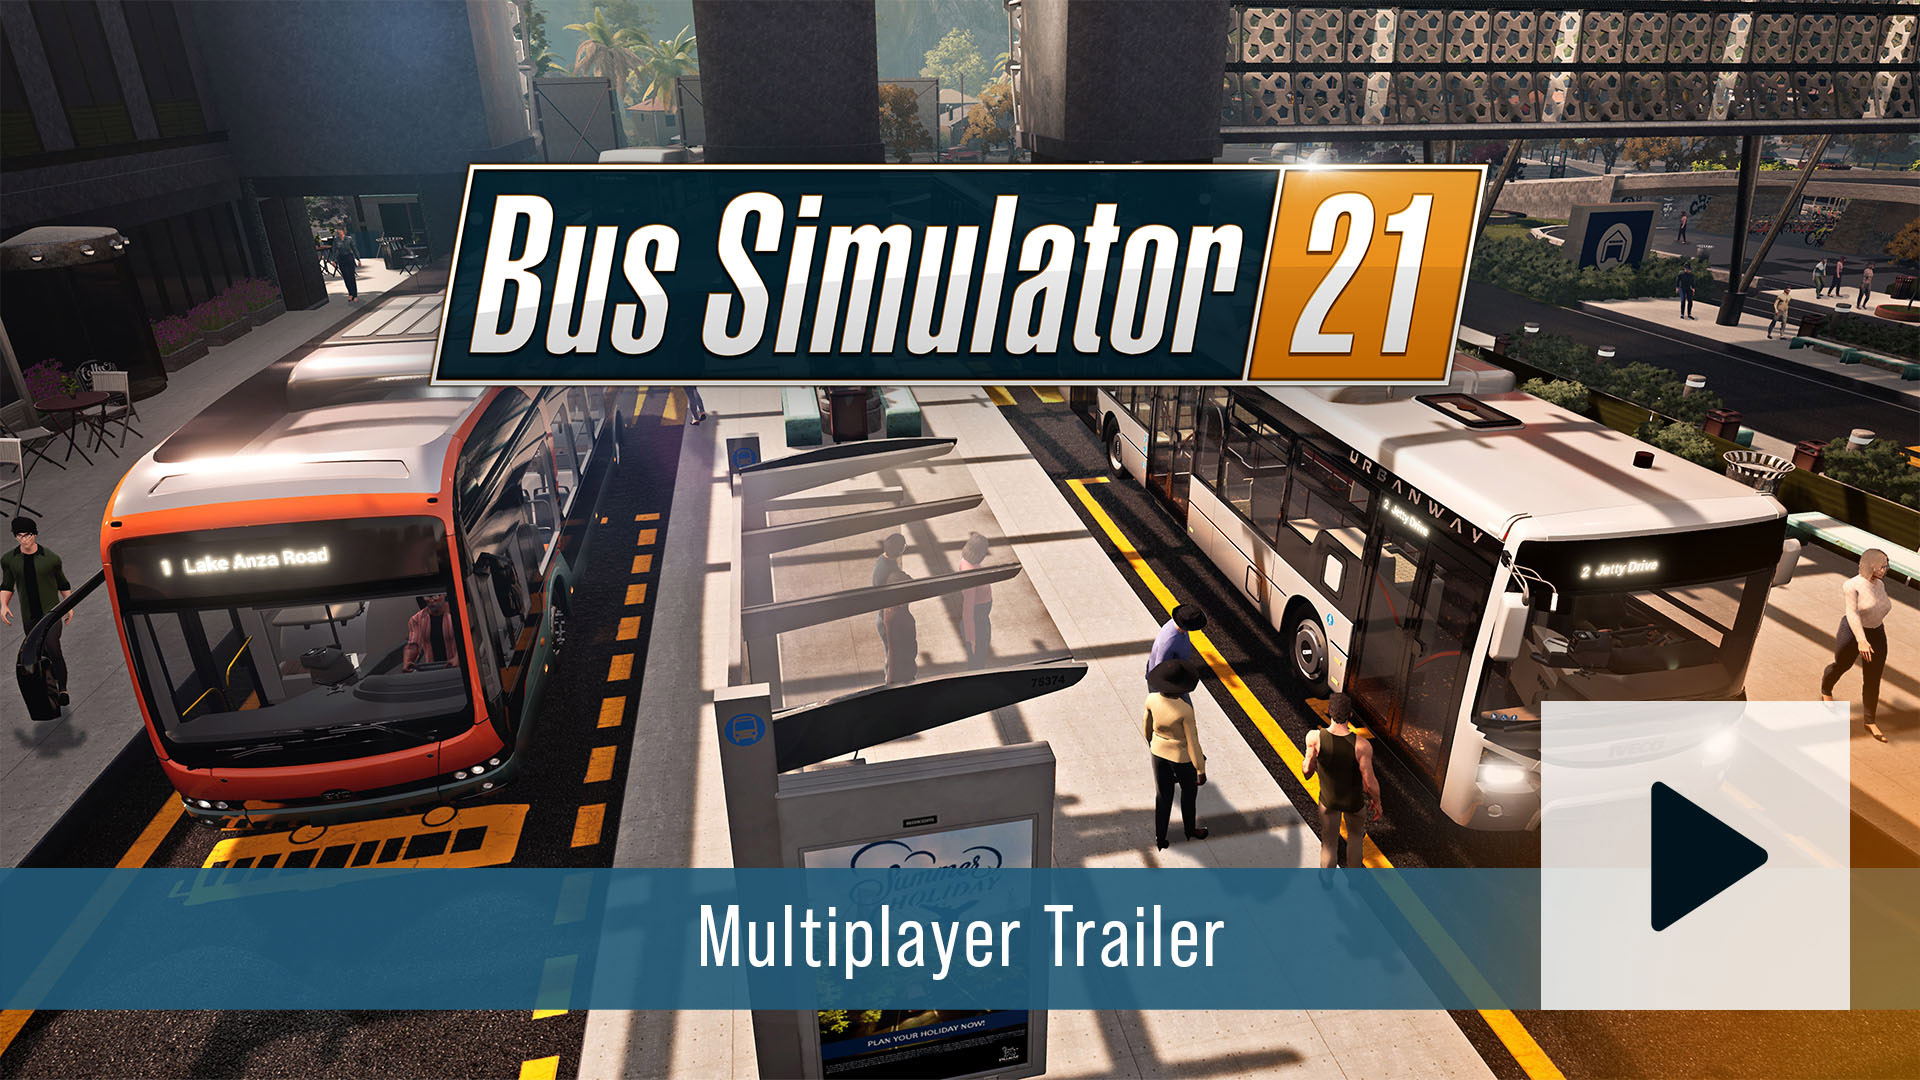 bus simulator 18 crack code